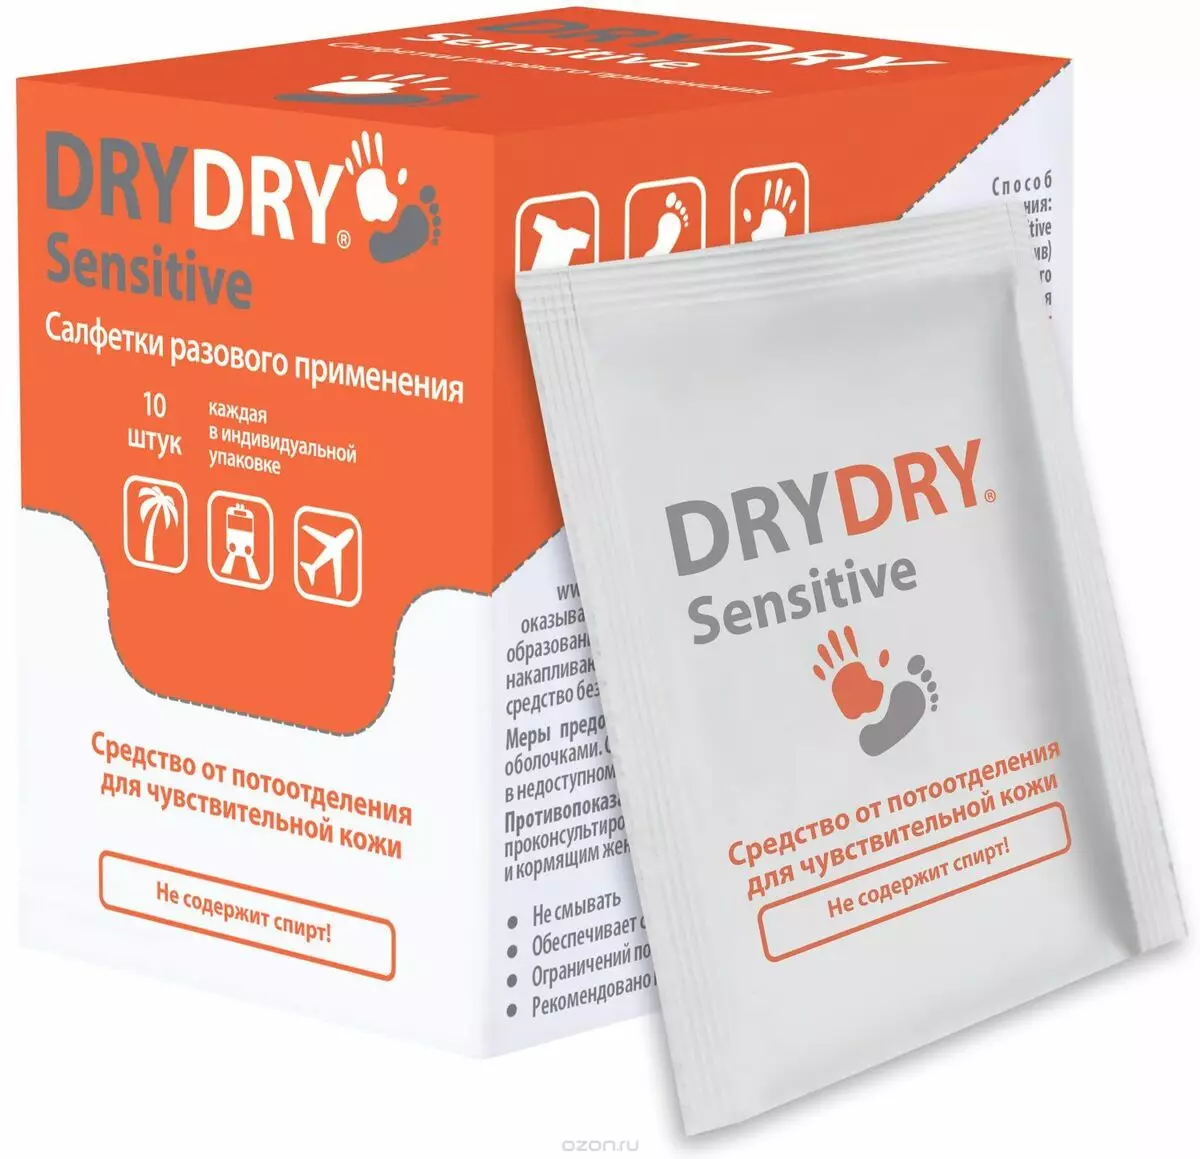 deodoran DRY DRY (34 foto): jenis antiperspirants, arahan penggunaan. Adalah komposisi deodoran berbahaya? Ulasan doktor 4546_10